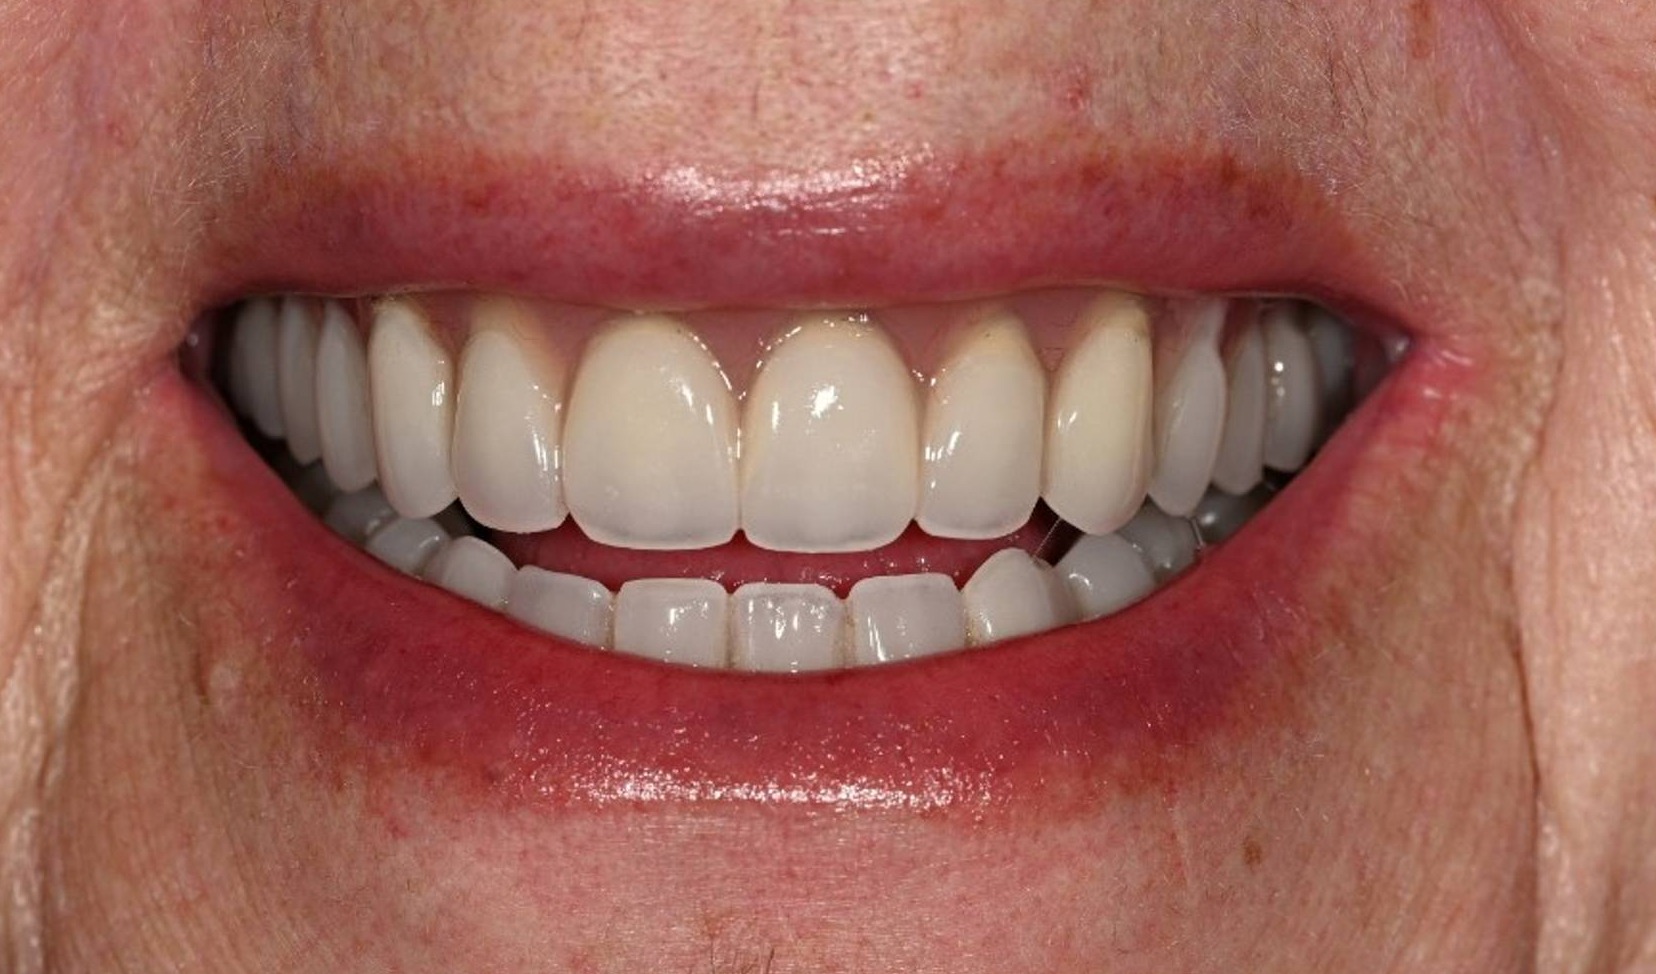 Dental Implants Before & After Image